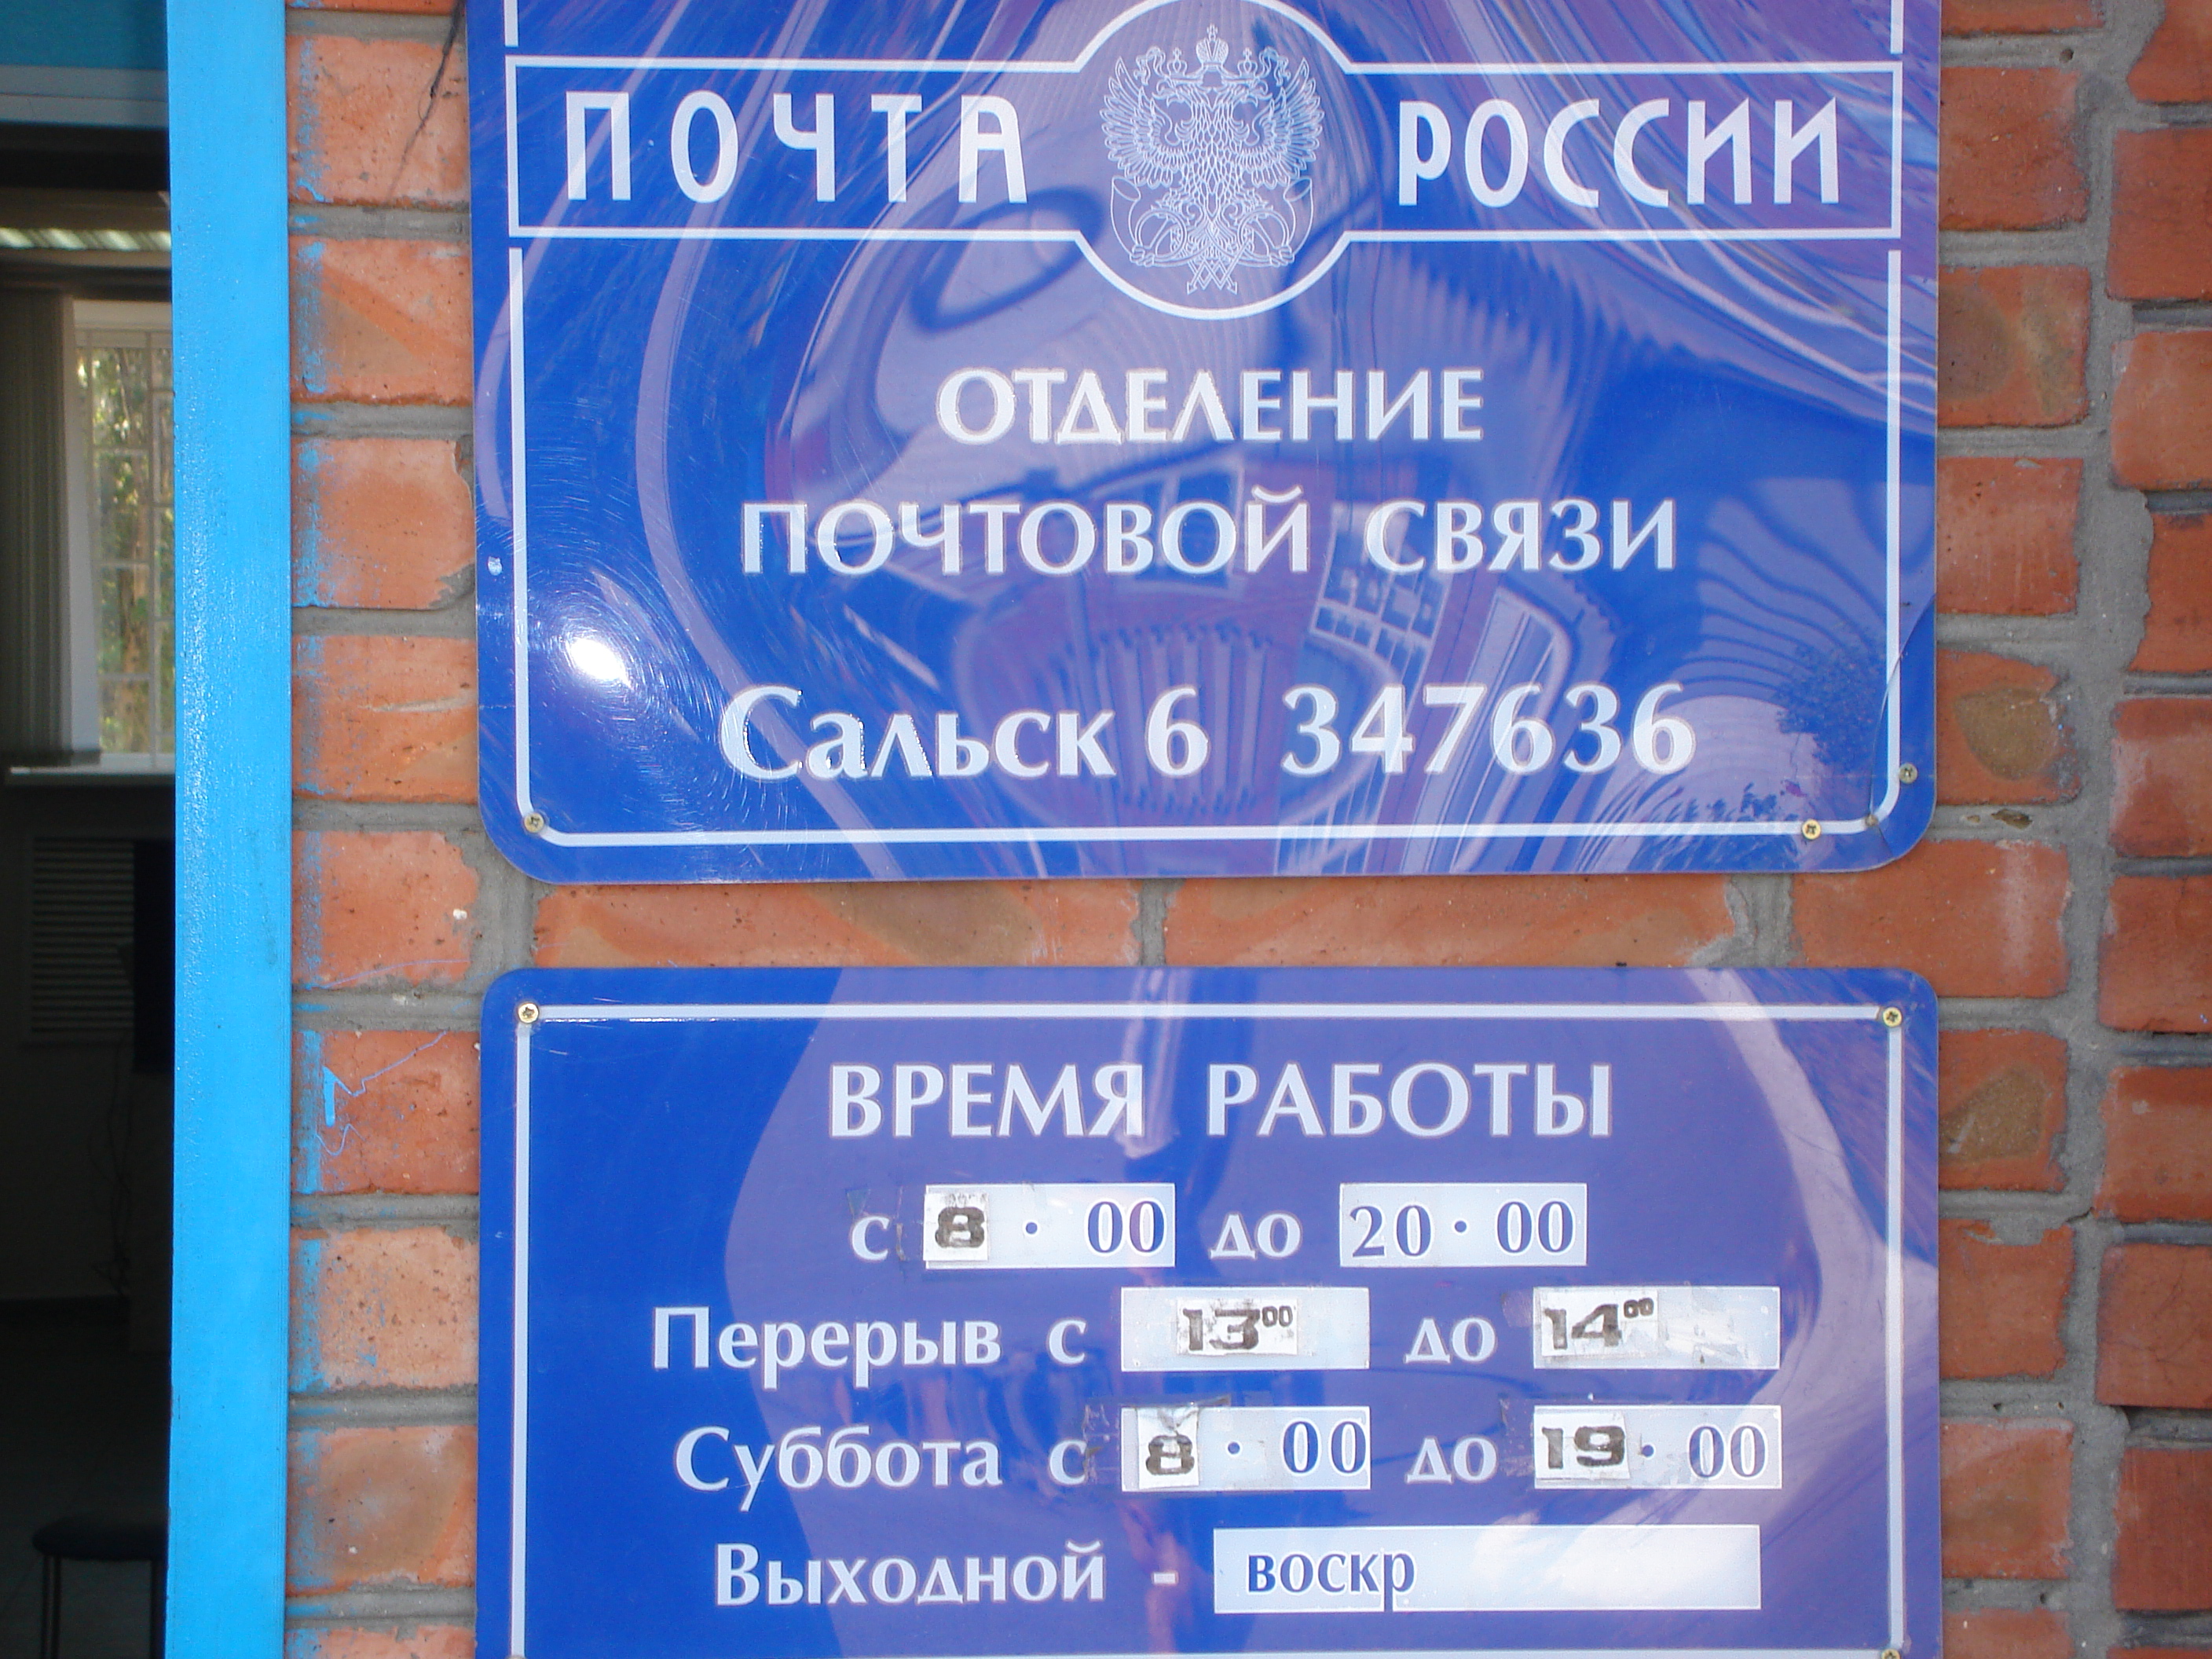 ВХОД, отделение почтовой связи 347636, Ростовская обл., Сальск